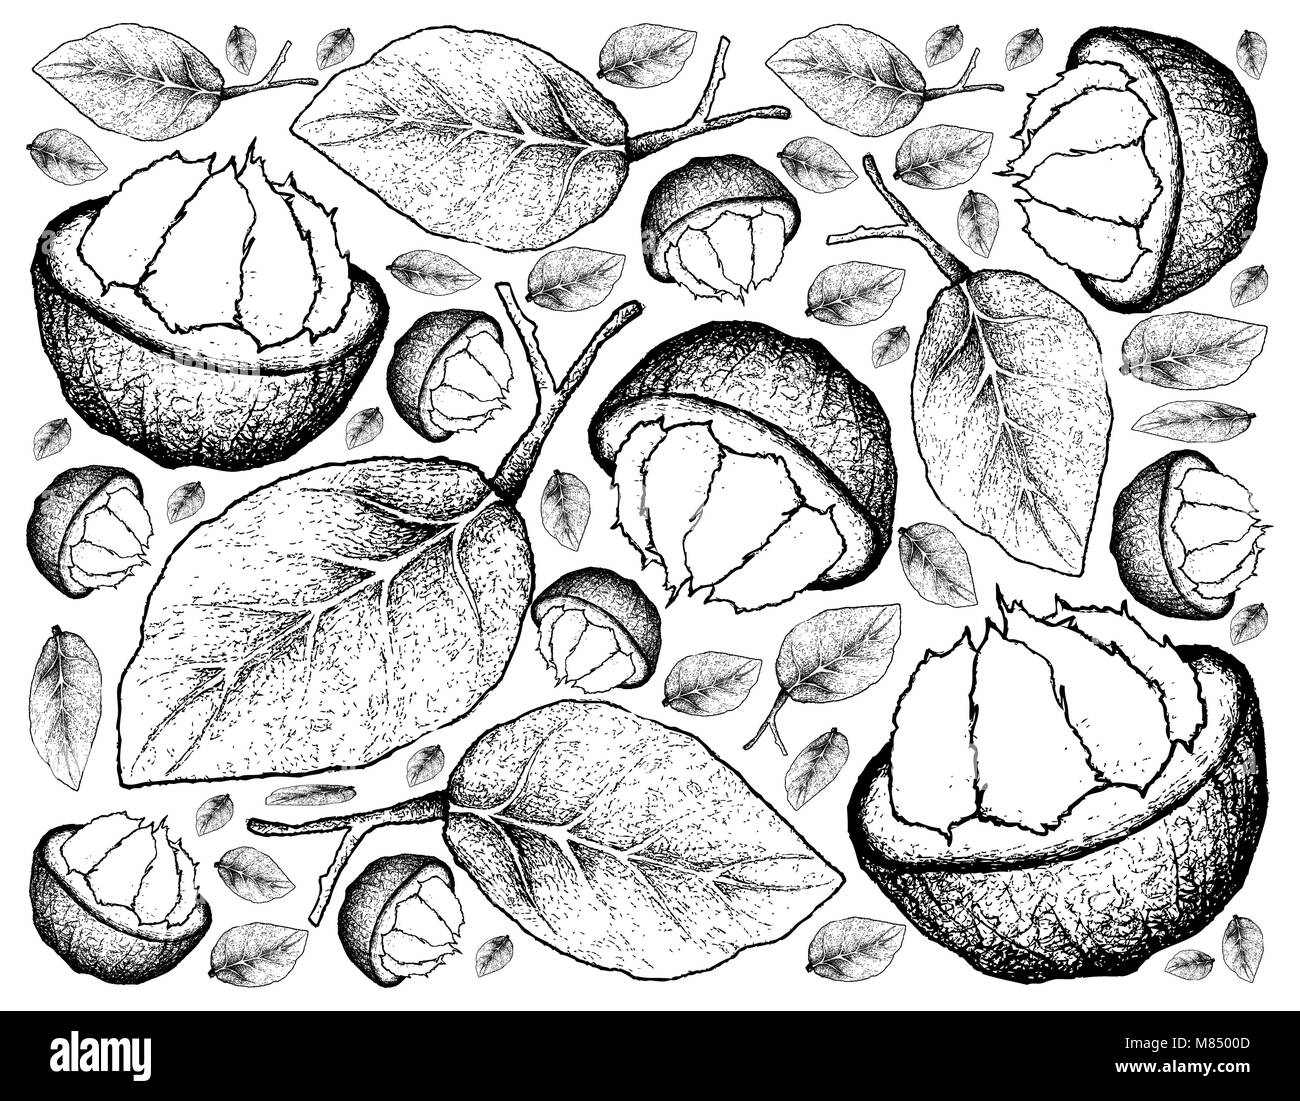 Frutti tropicali, immagine di sfondo di mano il bozzetto Sandoricum Koetjape, Santol Krathon o. Un frutto tropicale nel sud-est asiatico. Foto Stock